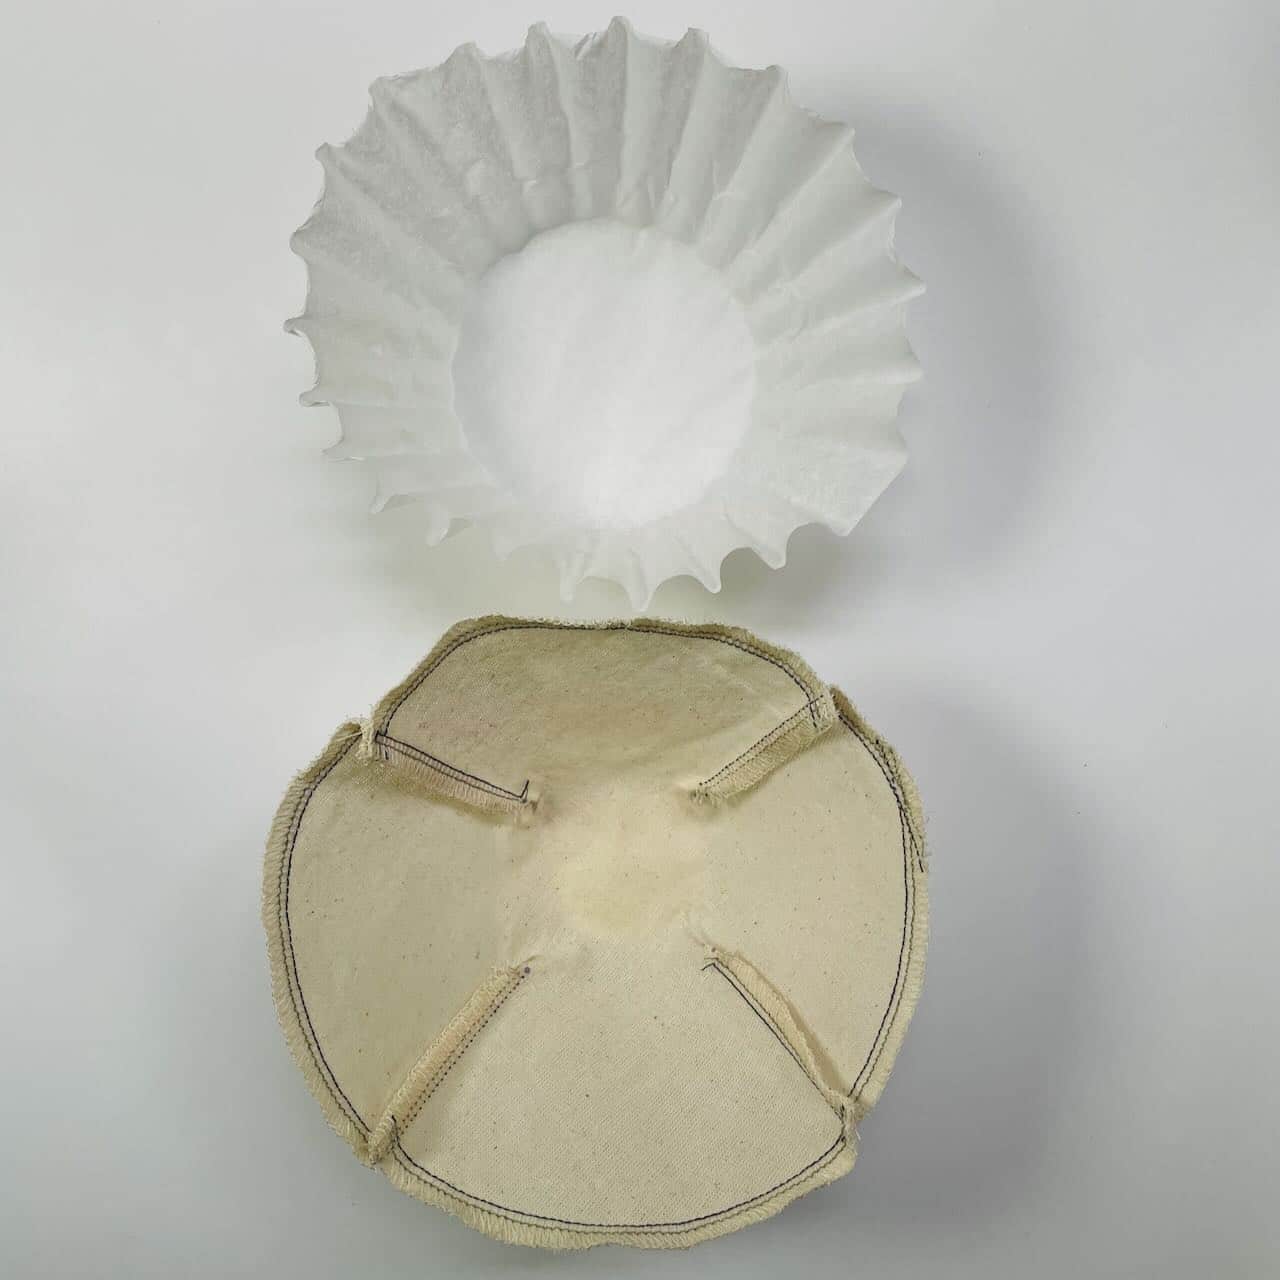 Reusable Muslin Coffee Filter Basket